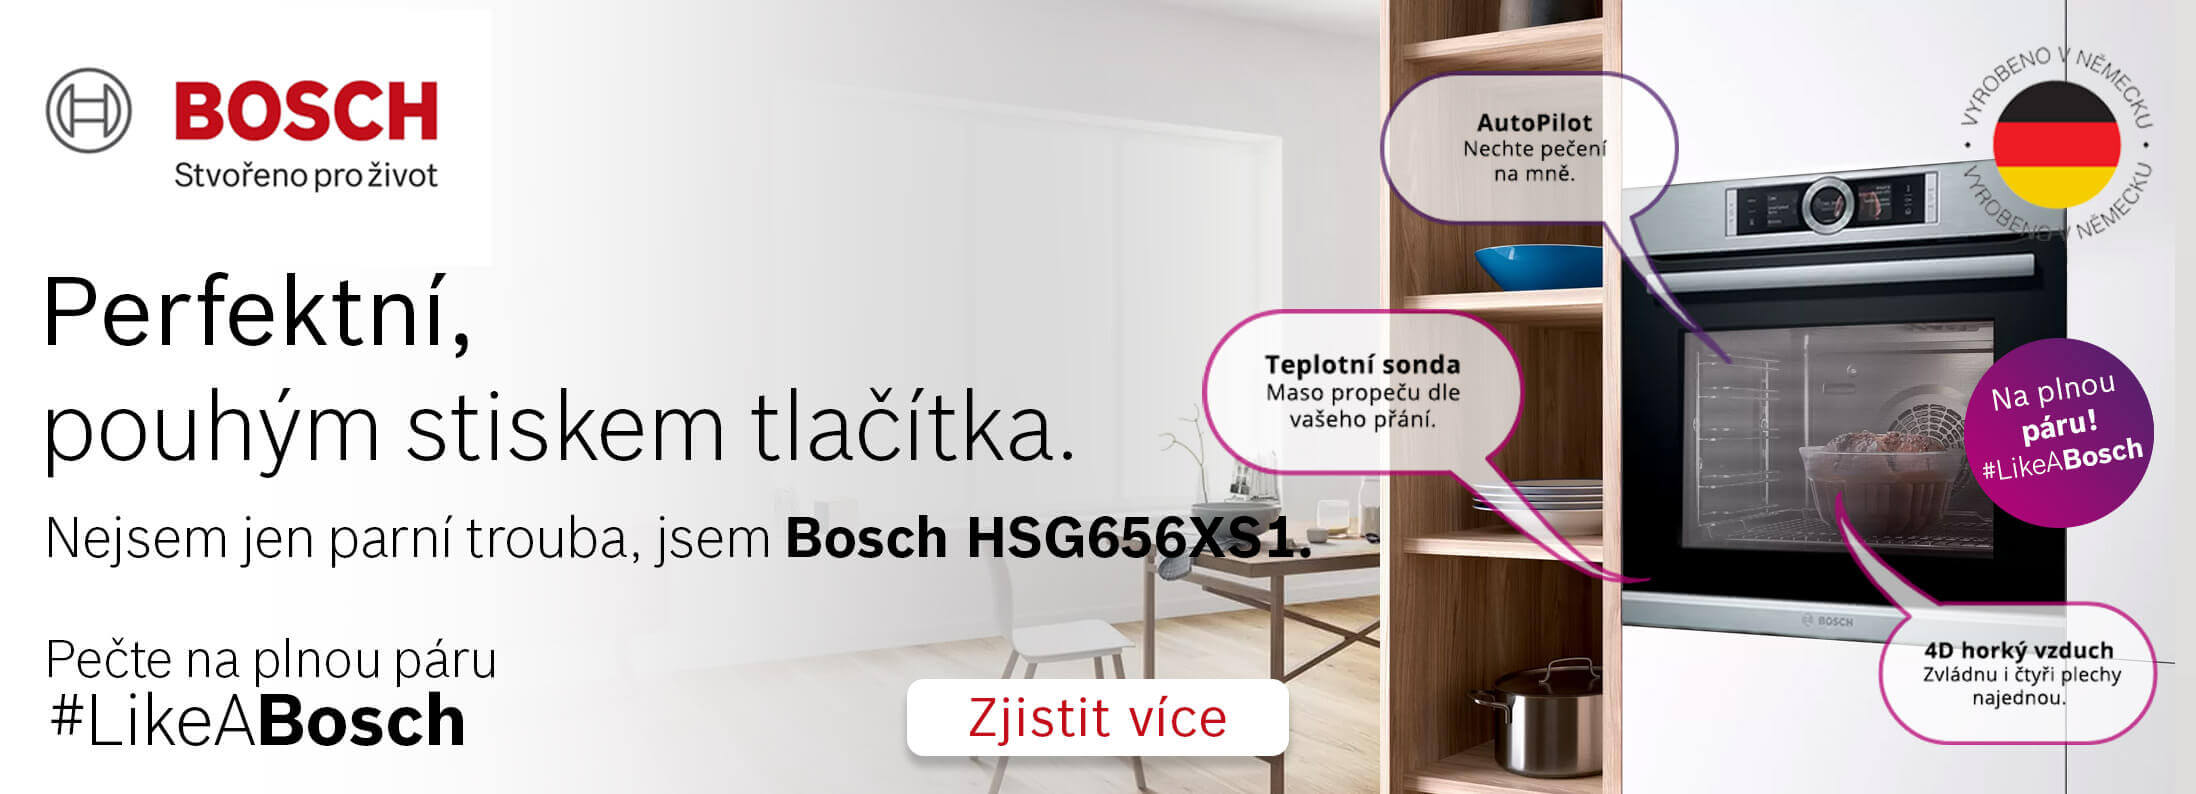 Bosch HSG656XS1